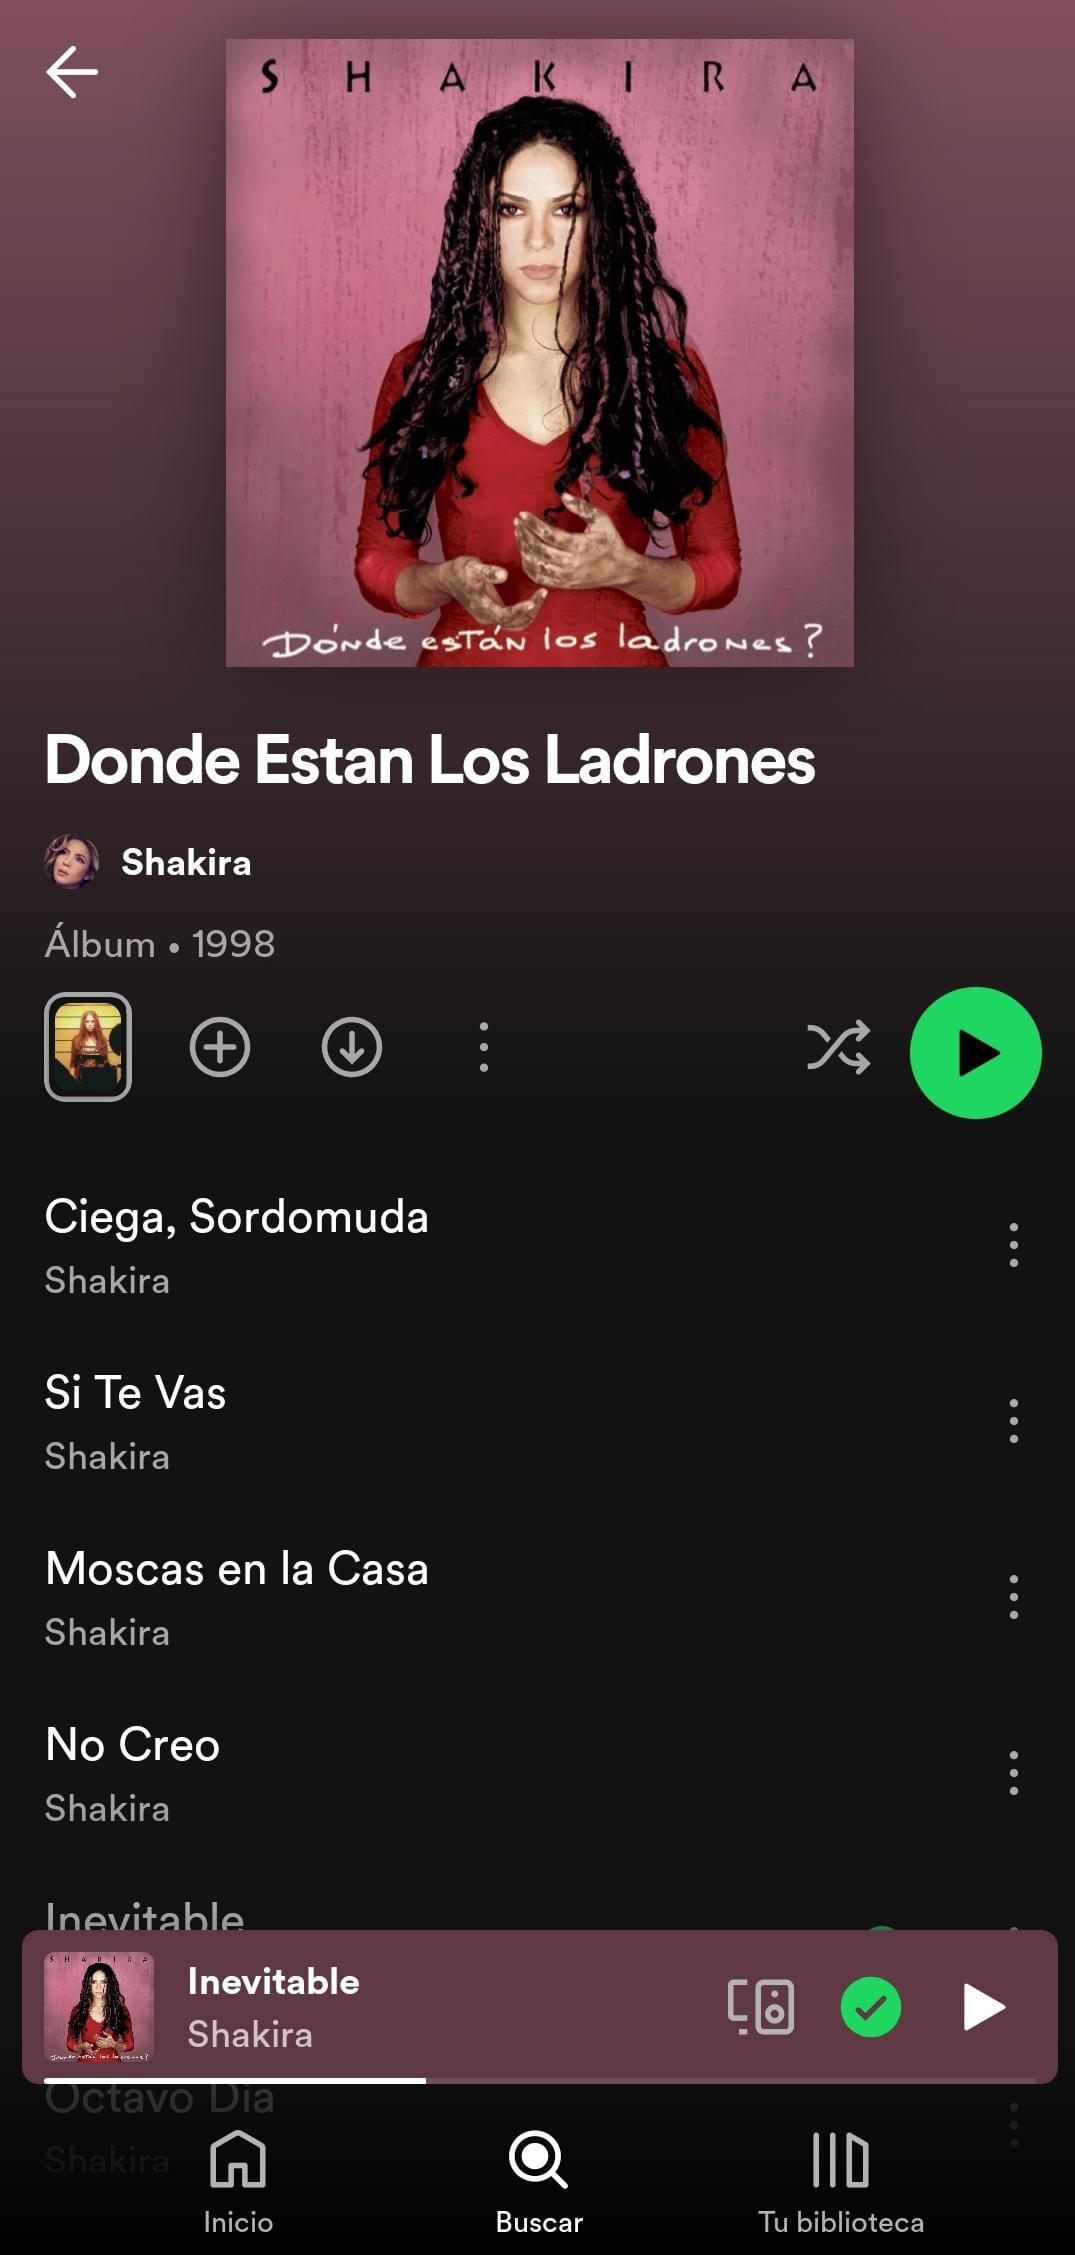 Dónde Están Los Ladrones es un álbum muy importante en la carrera de Shakira. (Spotify)